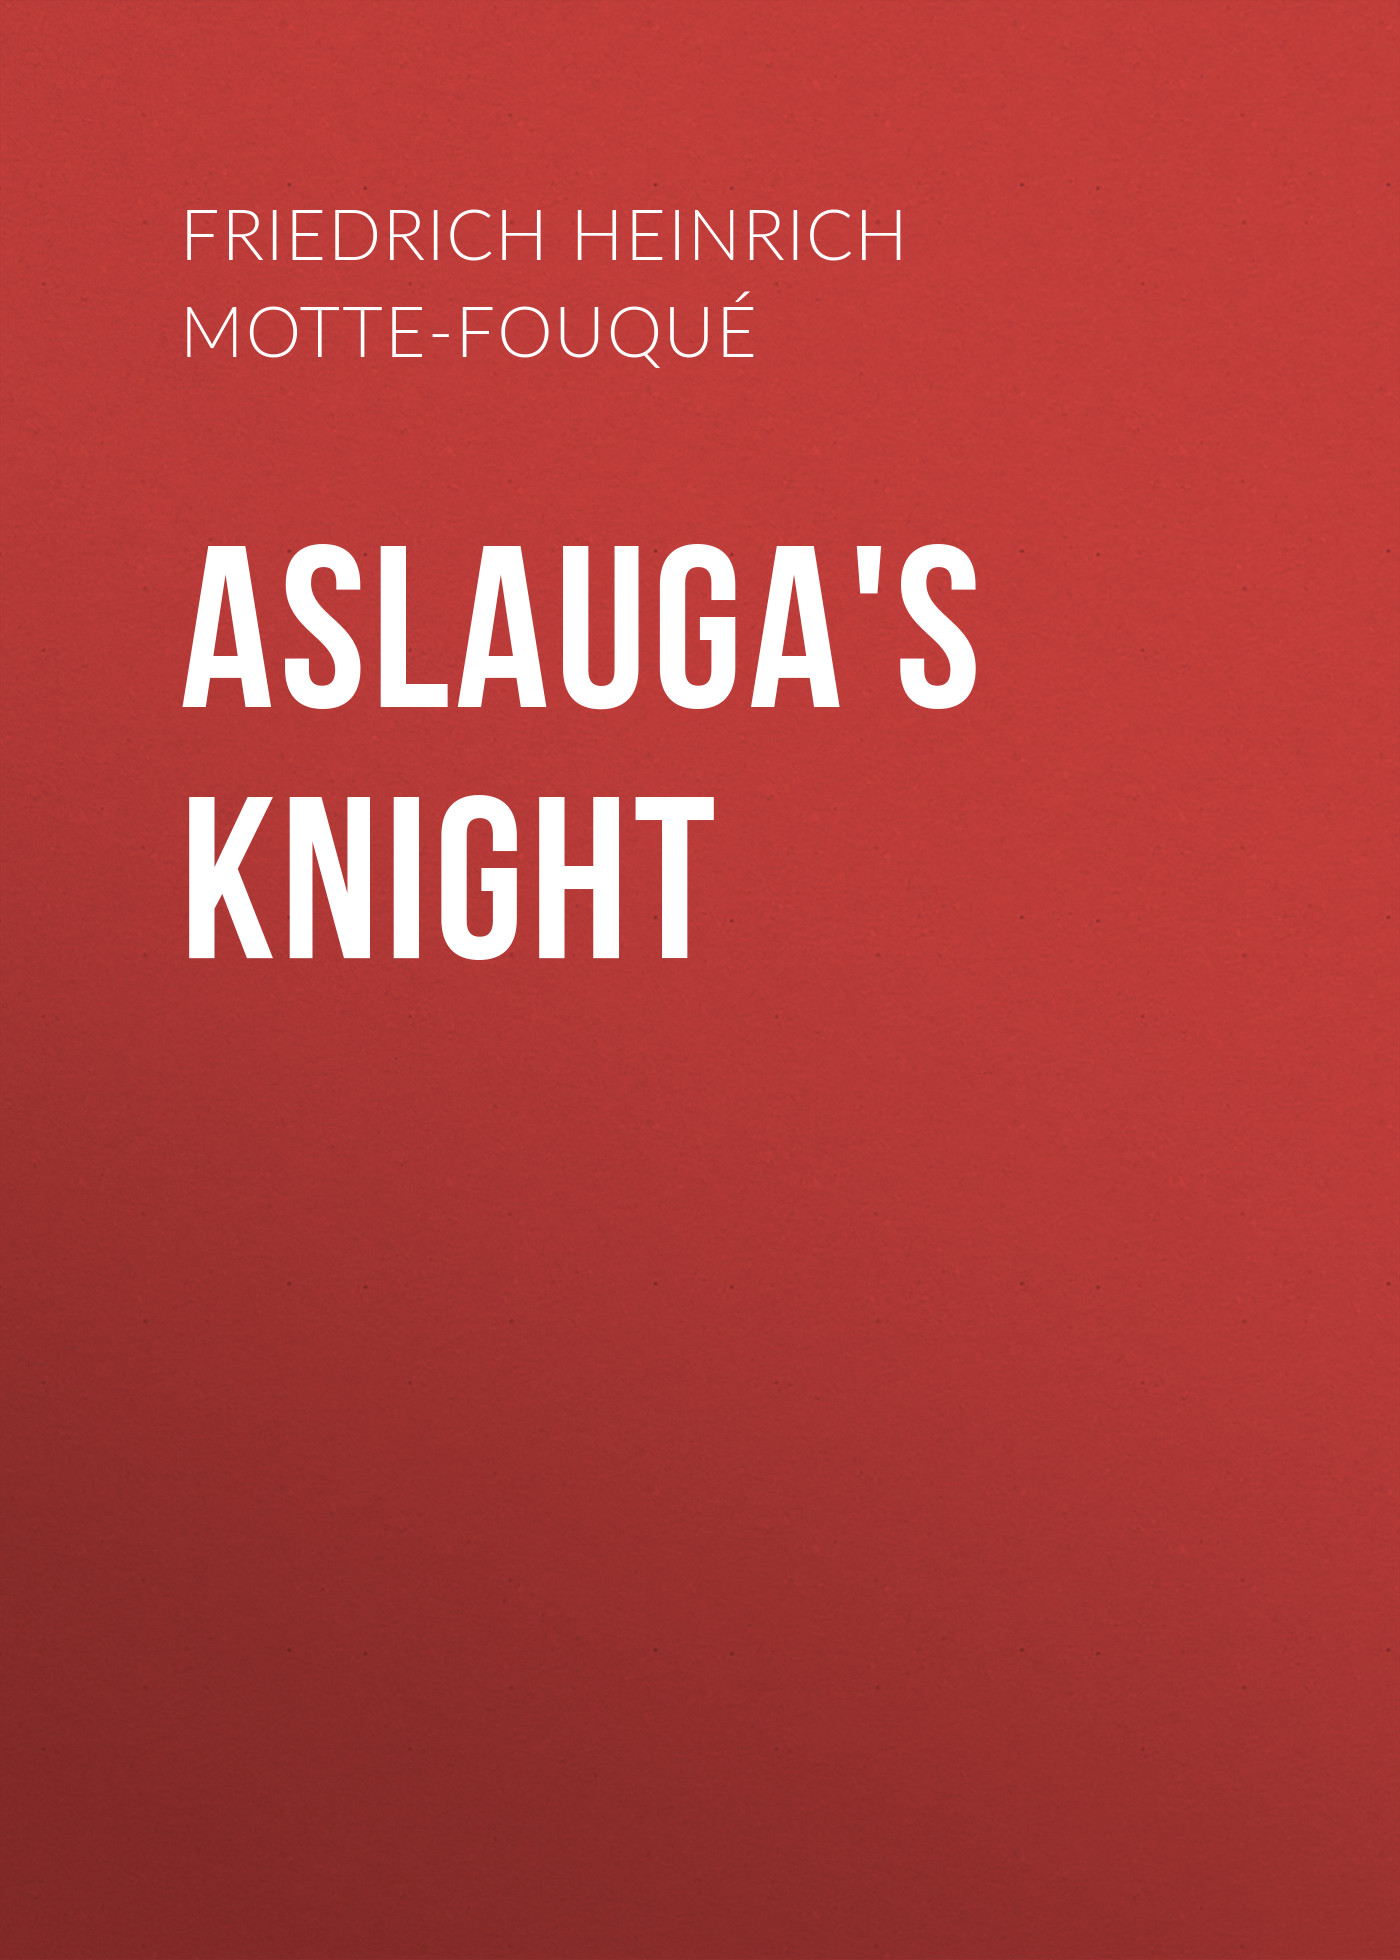 Книга Aslauga's Knight из серии , созданная Friedrich Heinrich Karl de La Motte-Fouqué, может относится к жанру Зарубежные детские книги, Зарубежная старинная литература, Зарубежная классика. Стоимость электронной книги Aslauga's Knight с идентификатором 36364710 составляет 0 руб.